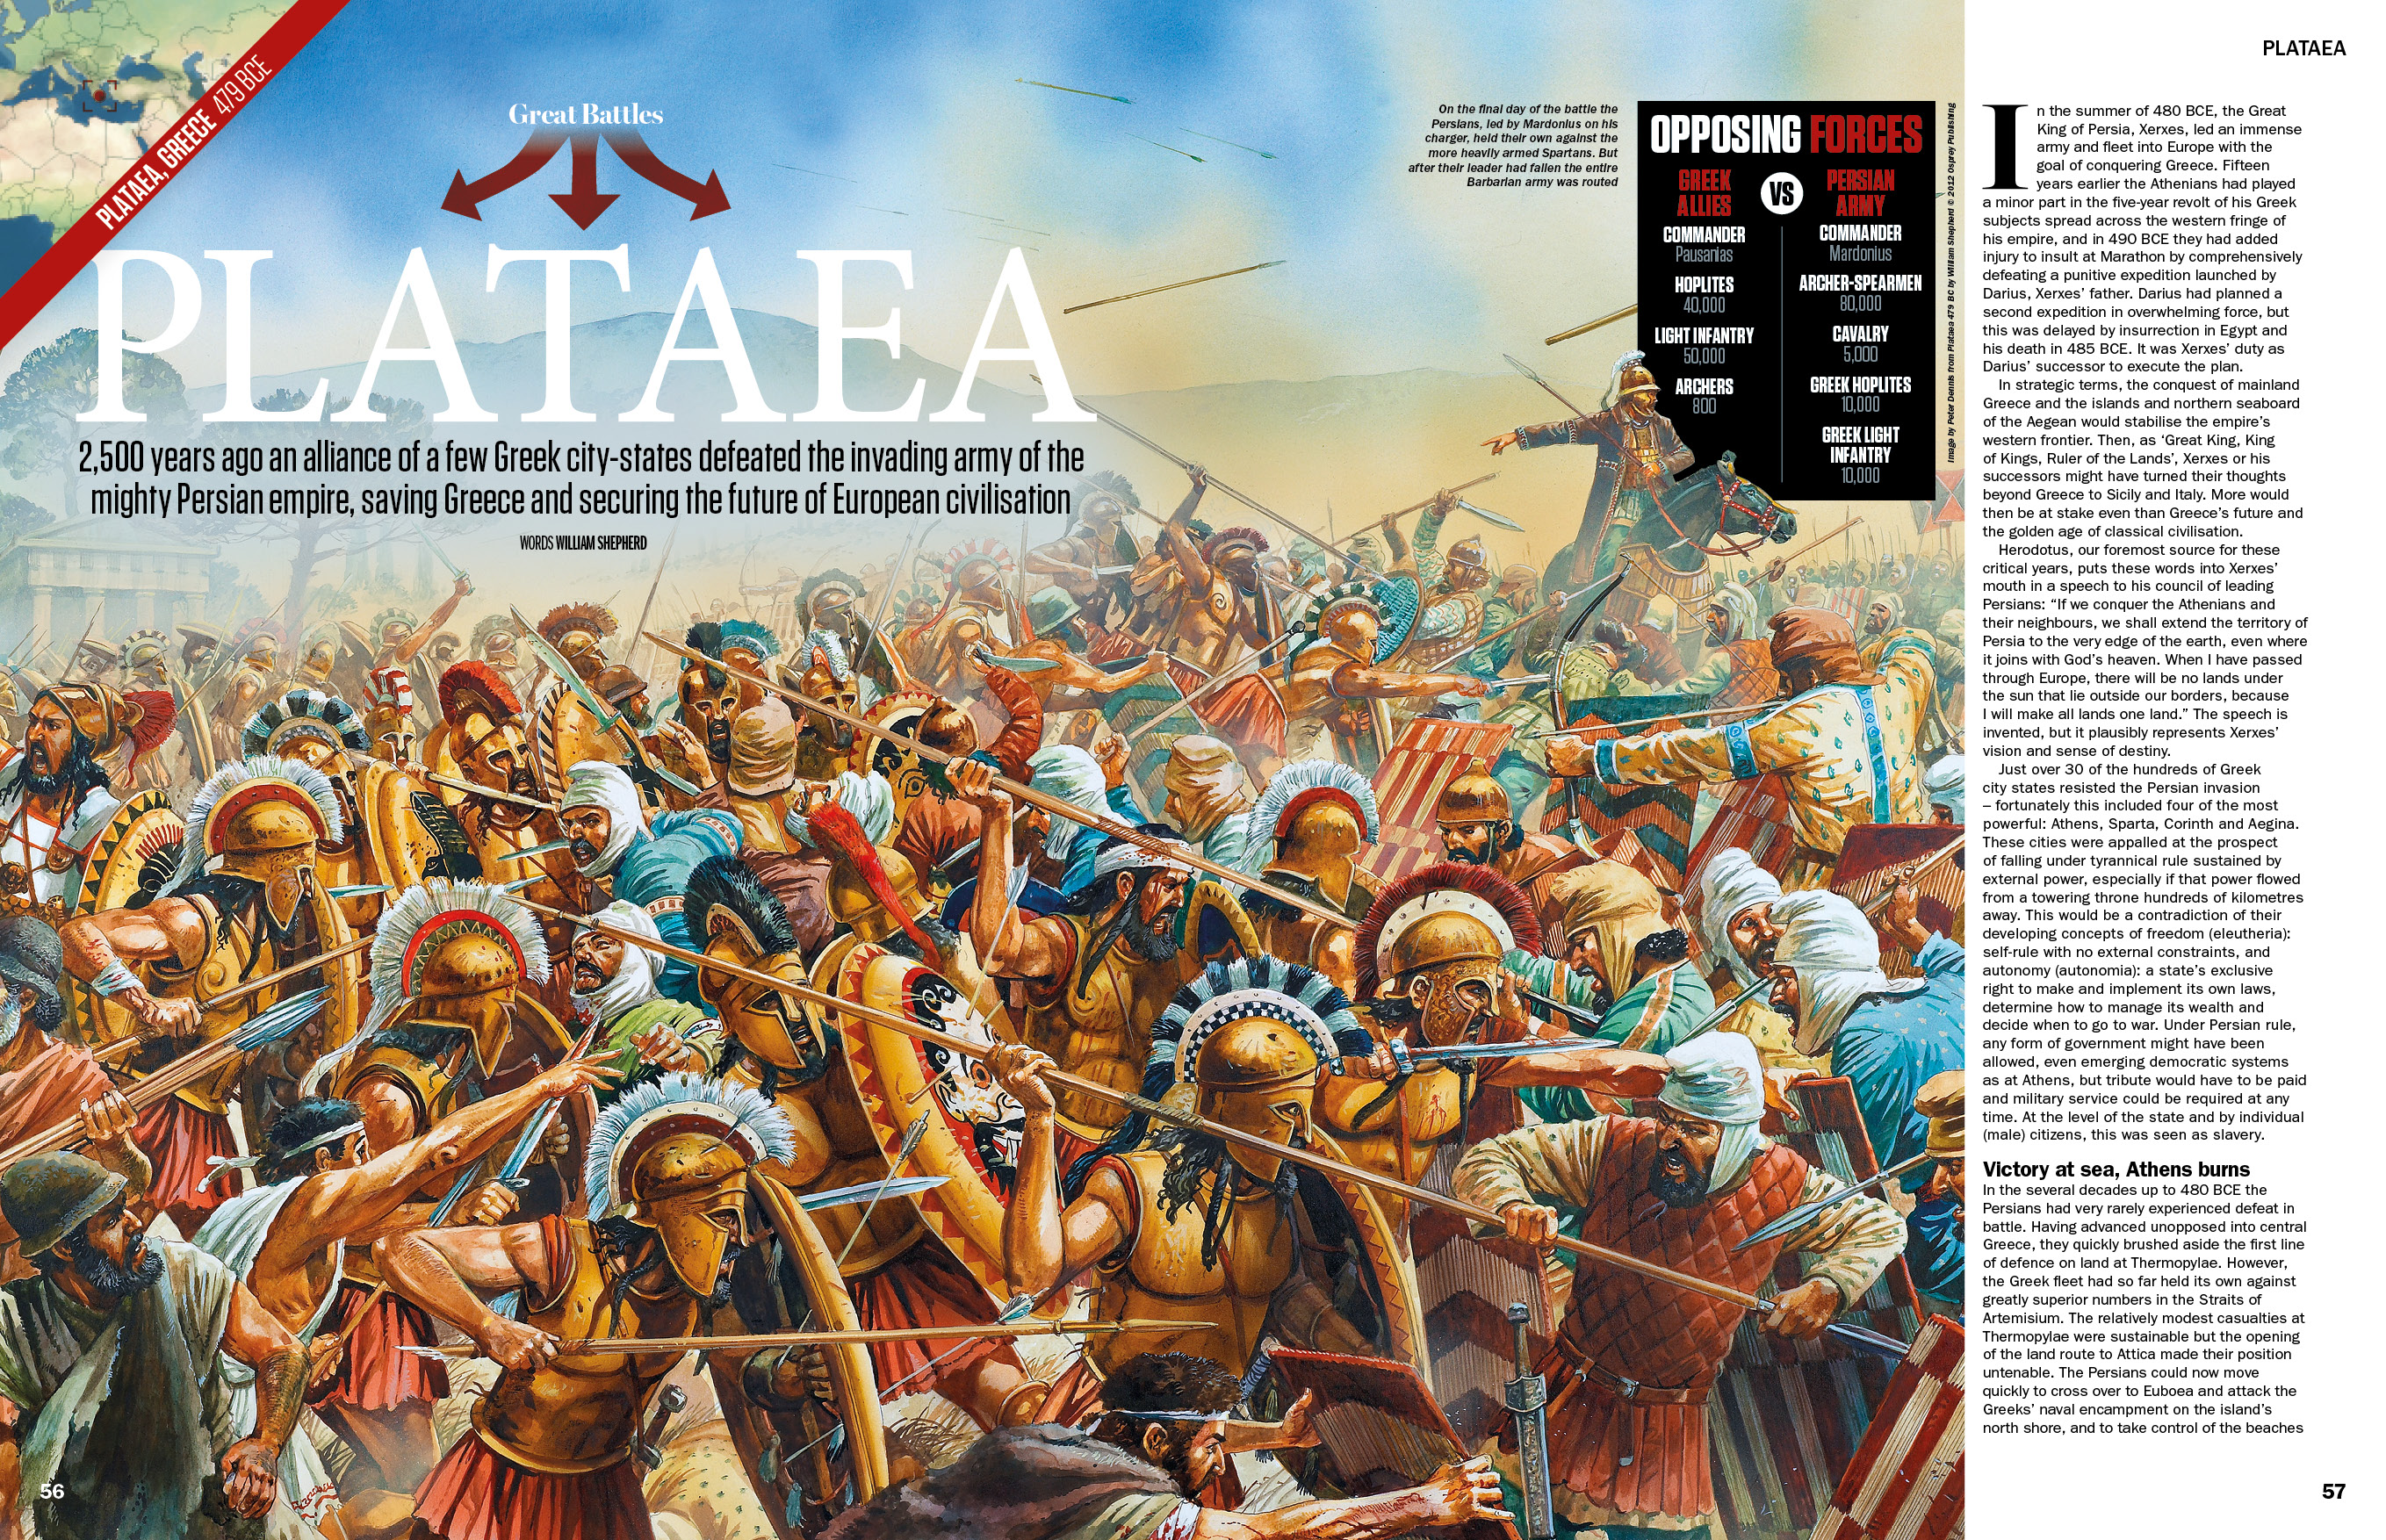 La revista History of War circuló sobre la batalla de Platea